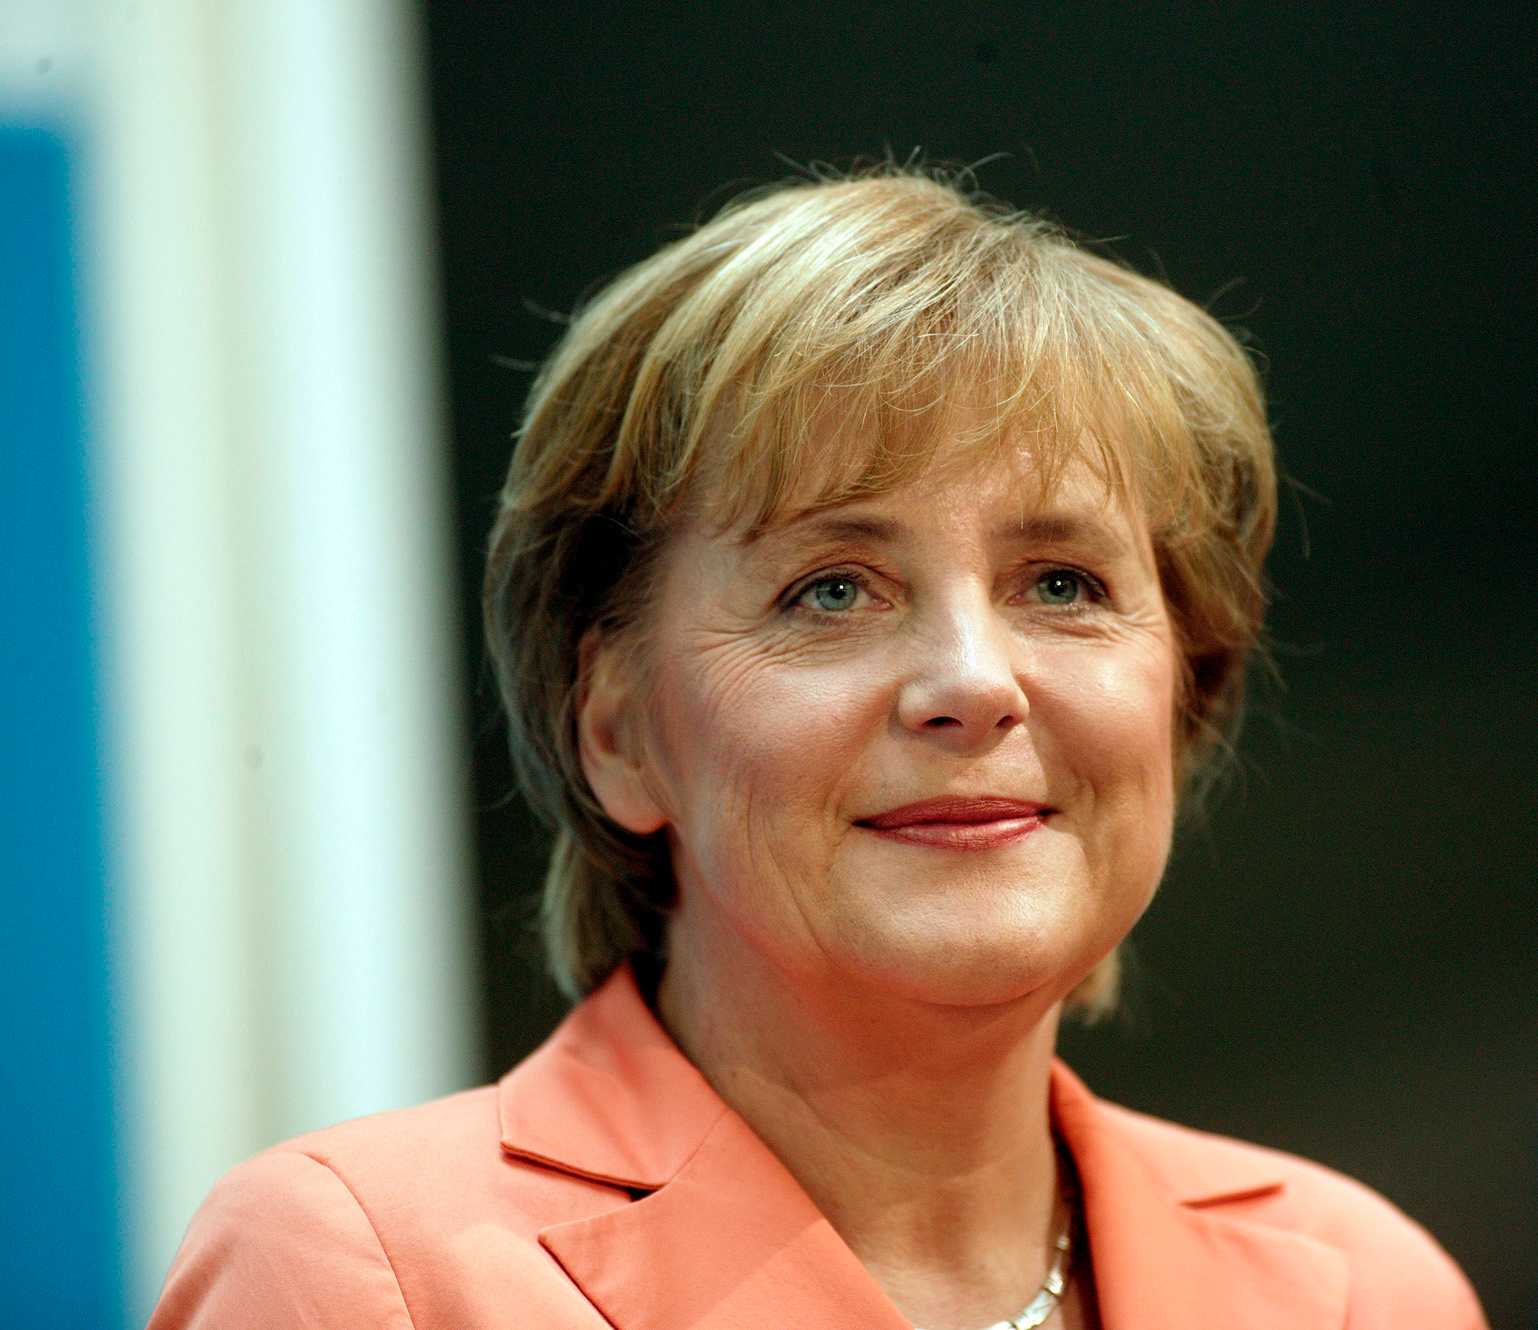 Angela Merkel è la donna più potente del mondo secondo Forbes